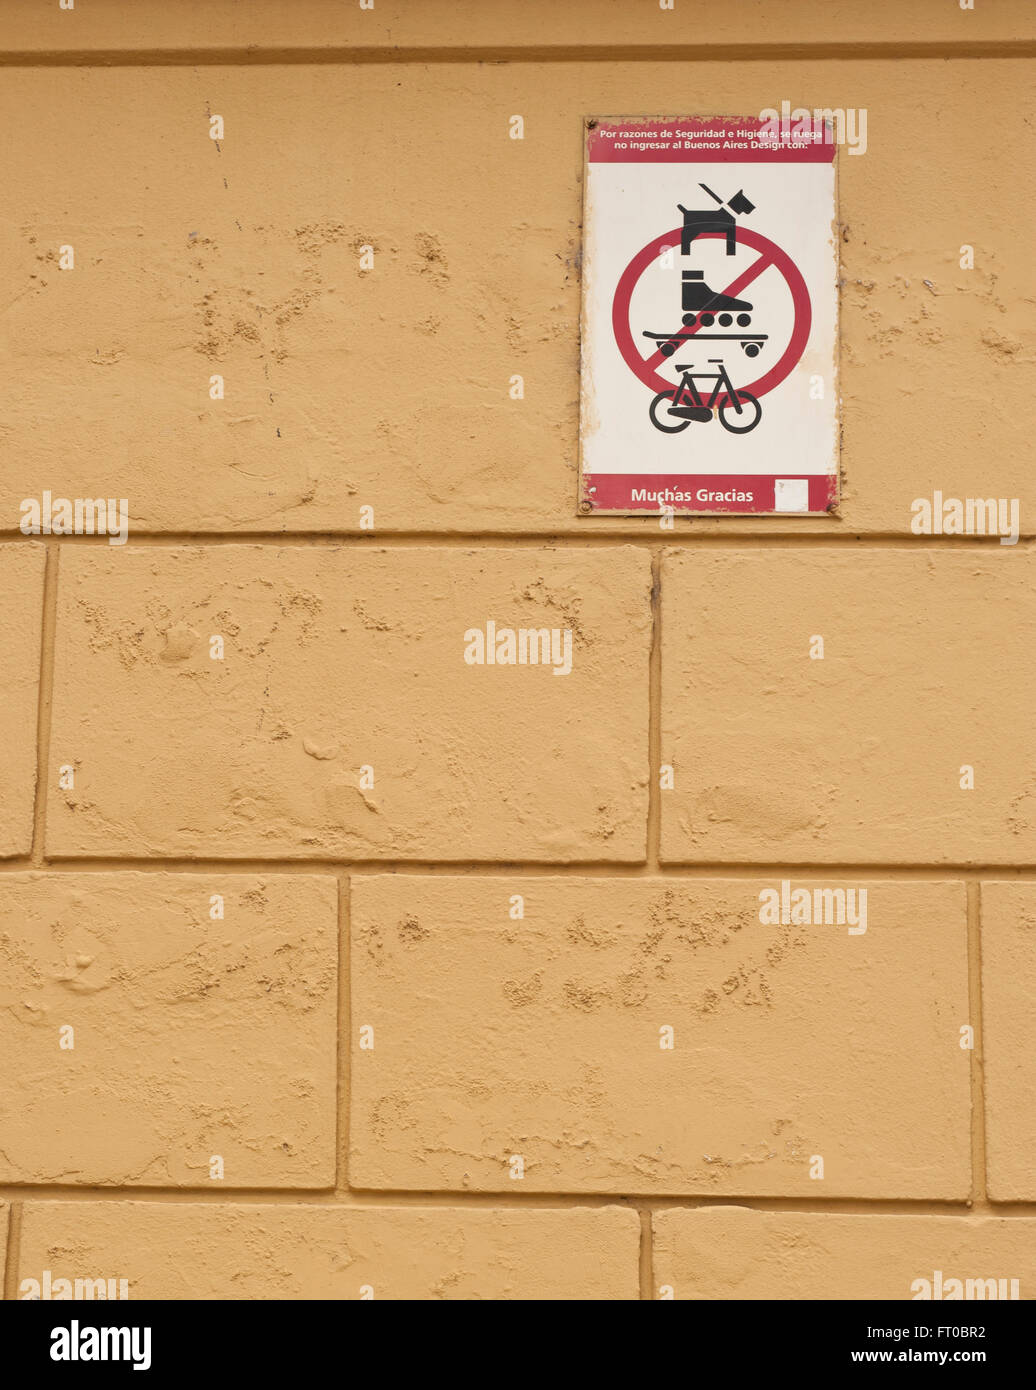 Cane, skate e bici non sono ammessi sul cartello muro, Buenos Aires Foto Stock